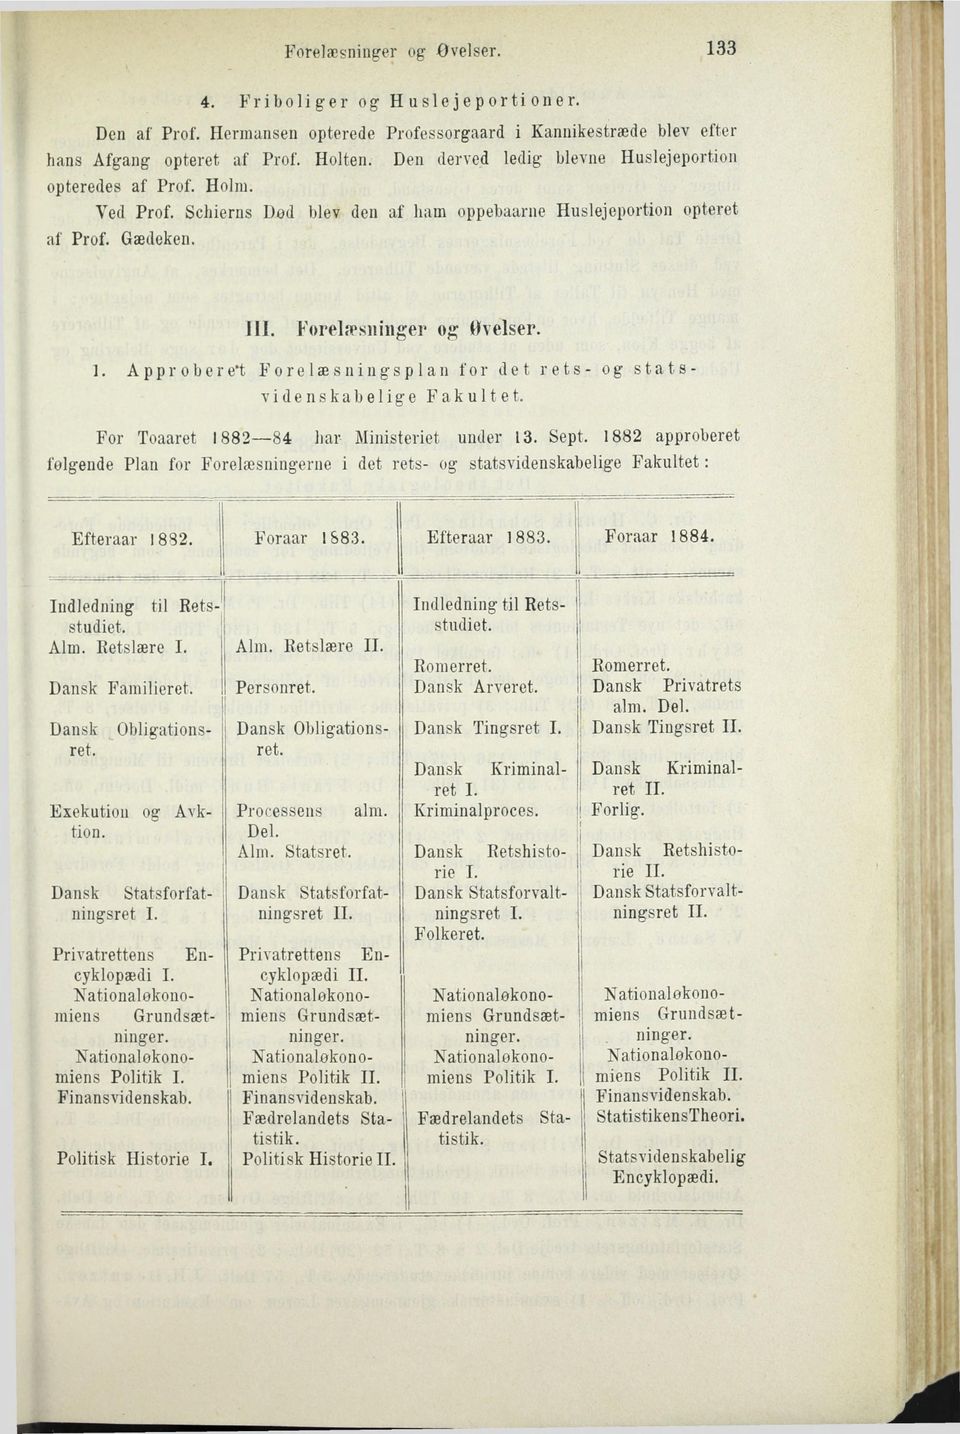 A p p r o b e r e't Forelæsningsplan for det rets- og statsvidenskabelige Fakultet. For Toaaret 1882 84 har Ministeriet under 13. Sept.